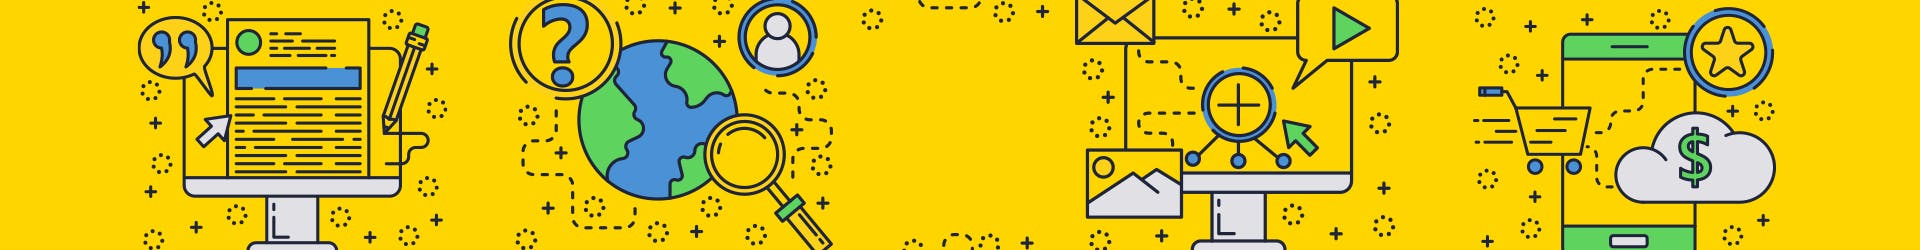 Pictos sur fond jaune représentant des actions menées depuis un site internet vitrine